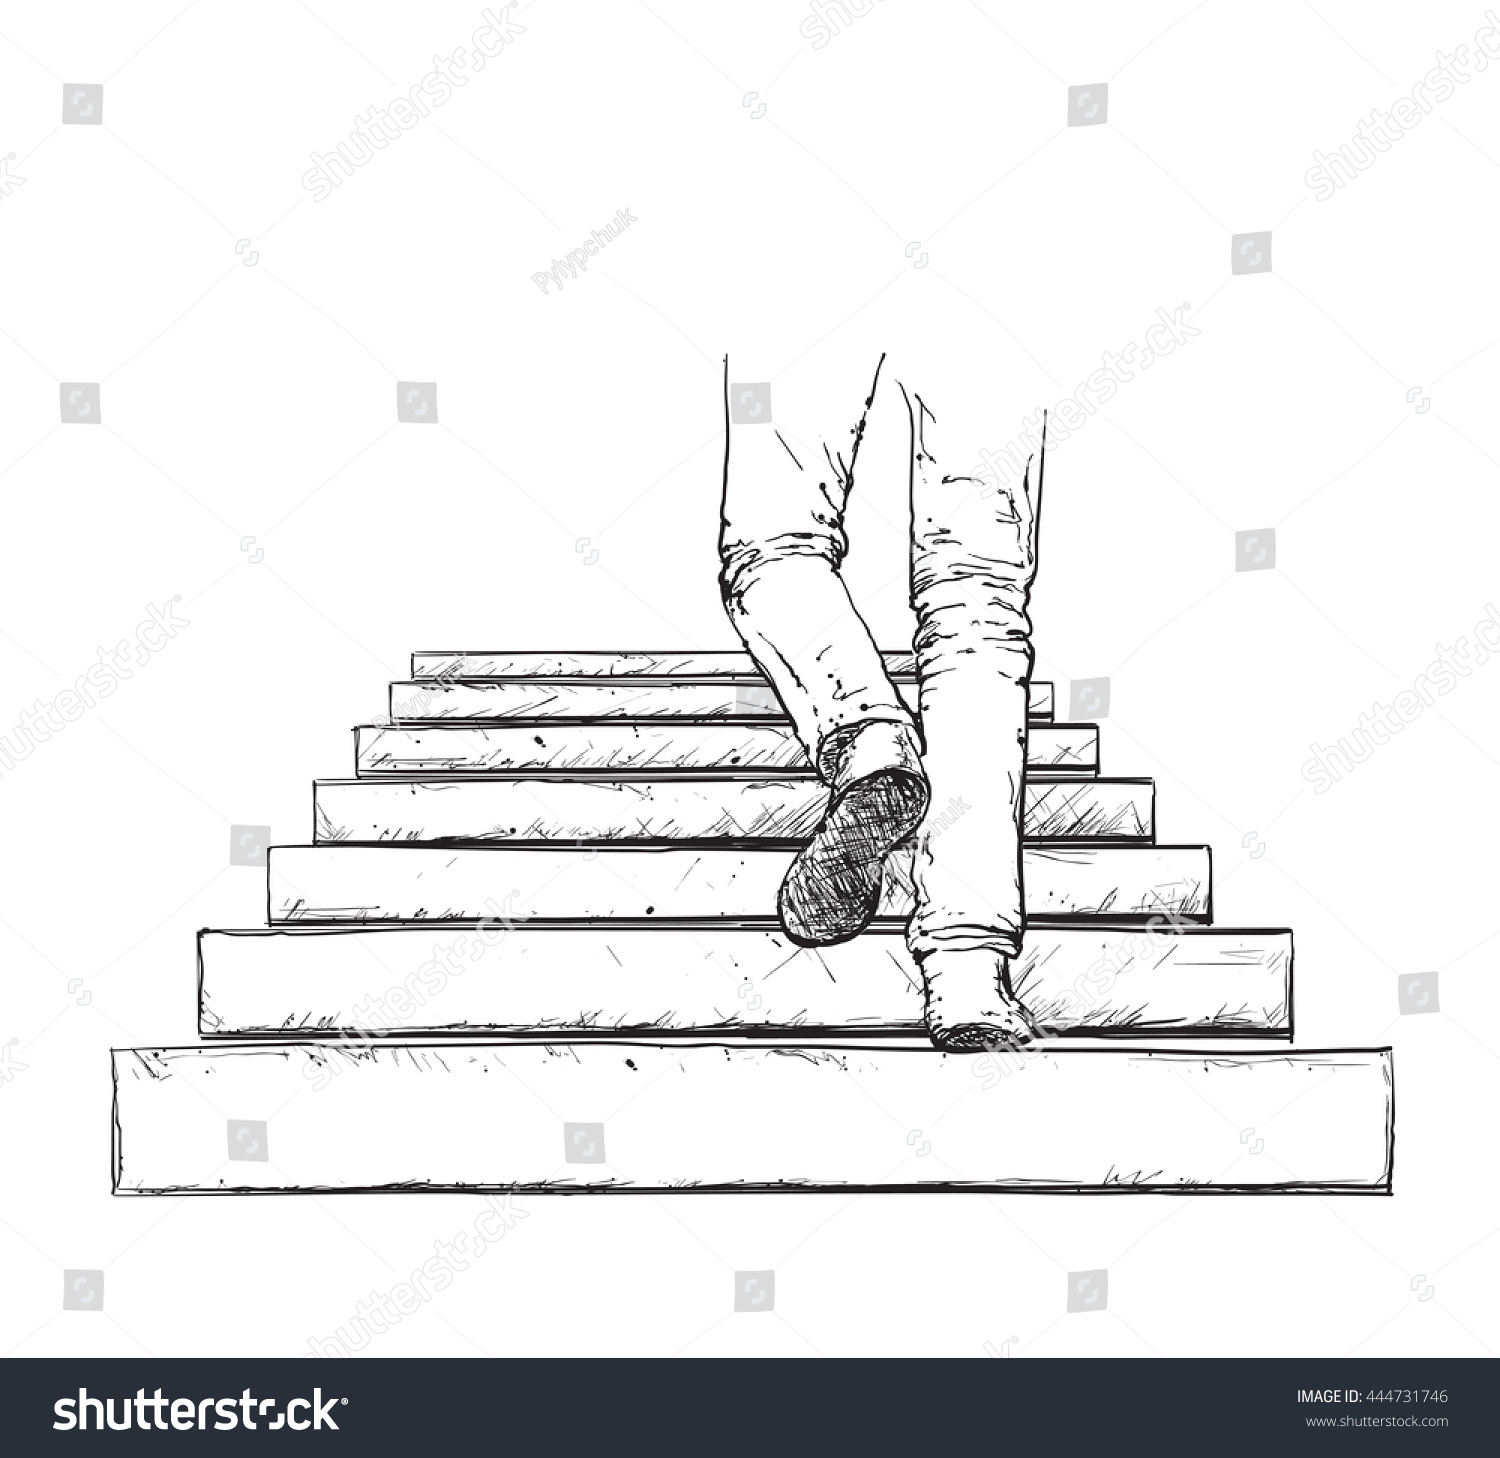 На какую максимальную высоту может подняться человек по лестнице длиной 4 м